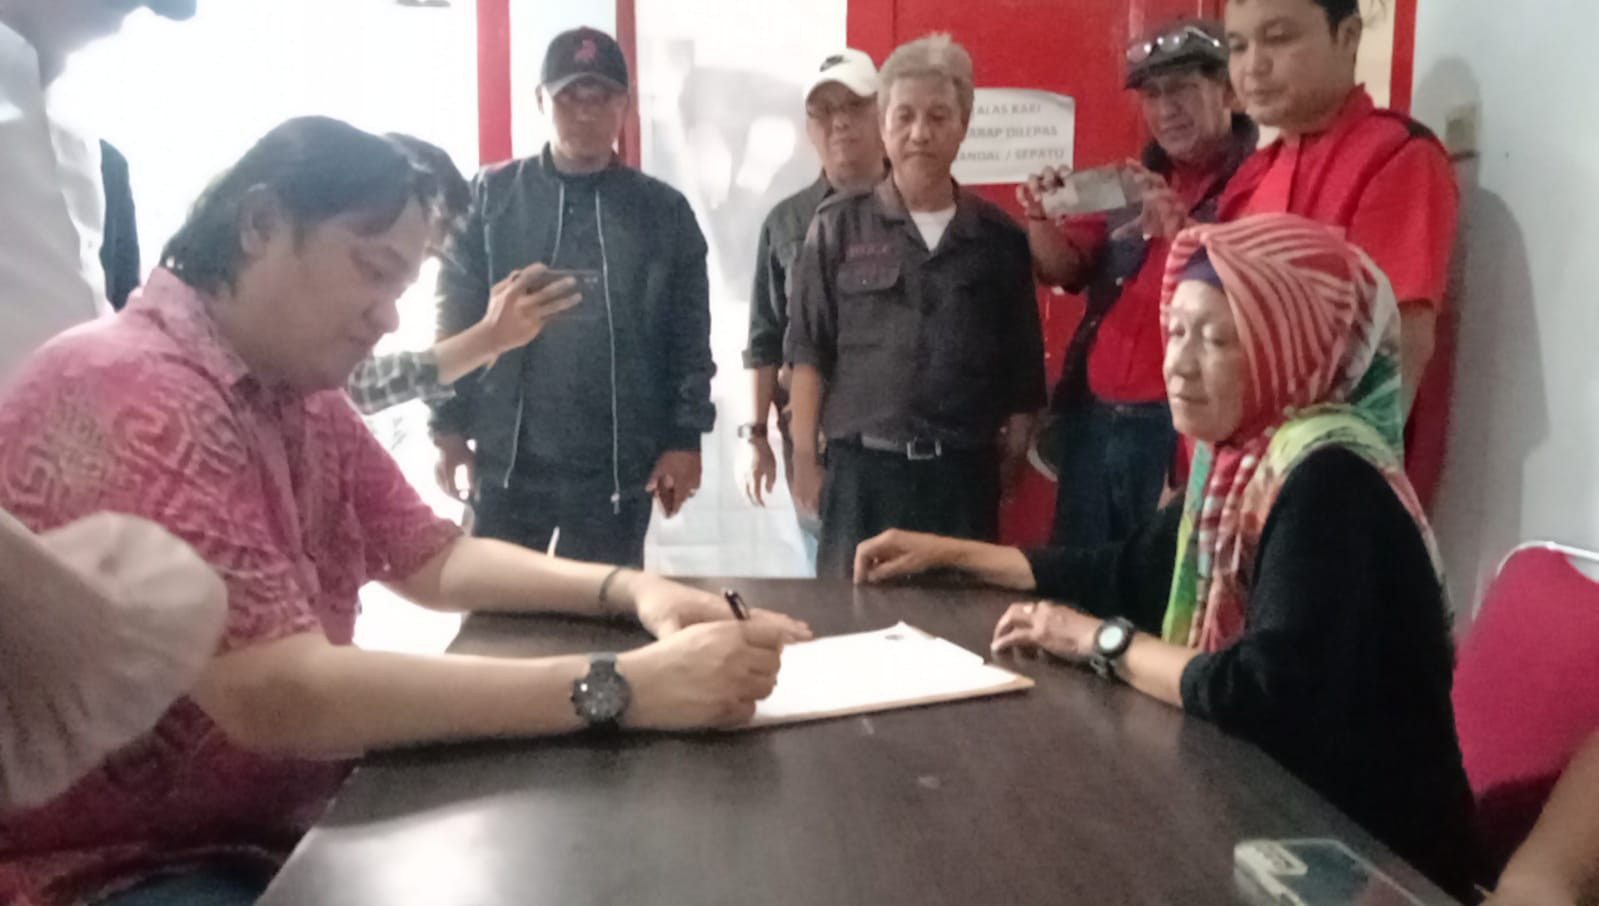 Farhat Abbas Daftar Jadi Balon Wali Kota Bogor Bogor Lewat PDI Perjuangan - JPNN.com Jabar